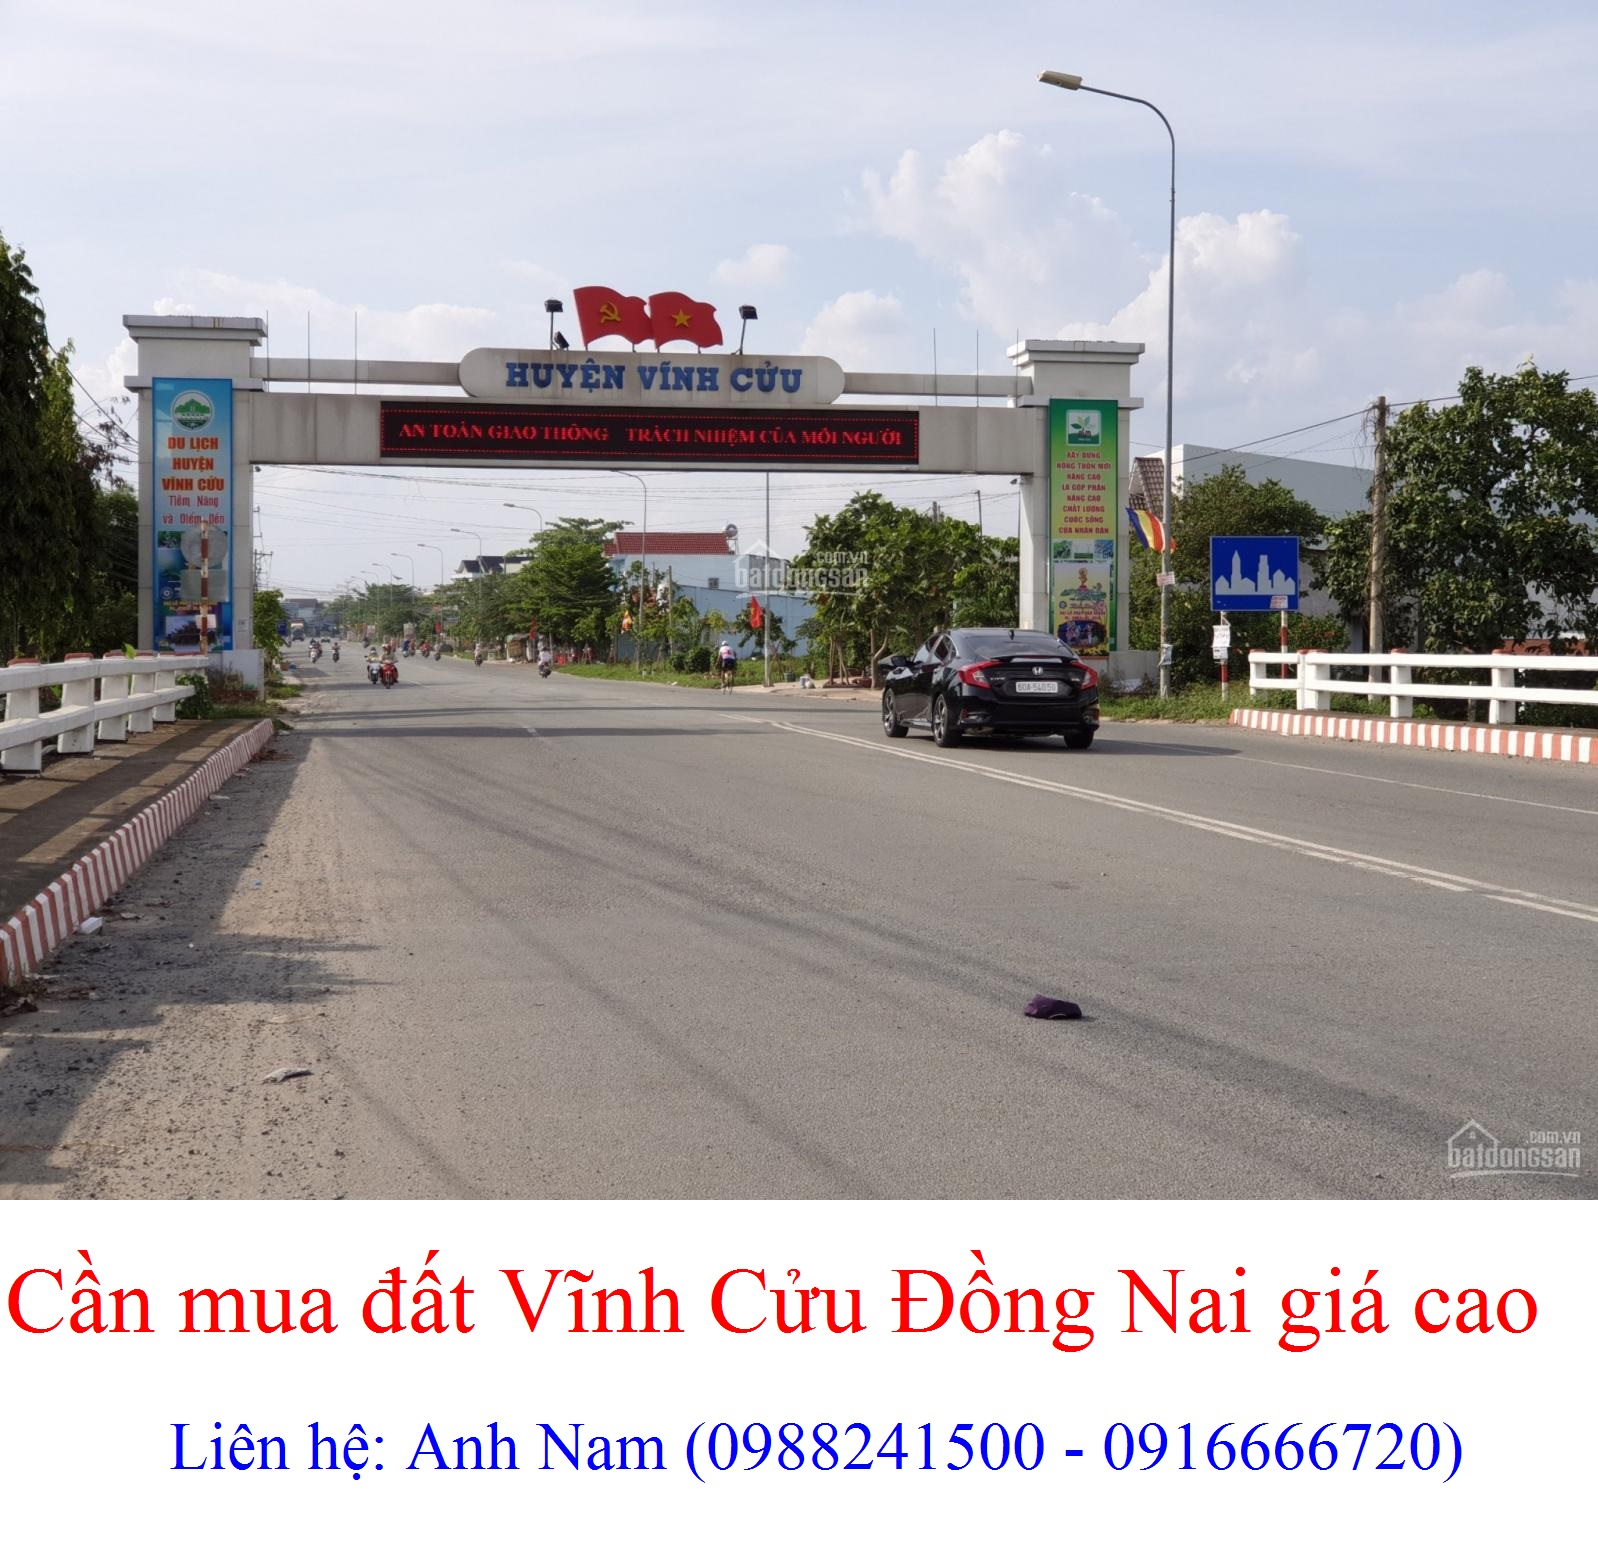 Cần mua đất xã Tân Bình, huyện Vĩnh Cửu giá cao, mua chính chủ, thiện chí mua